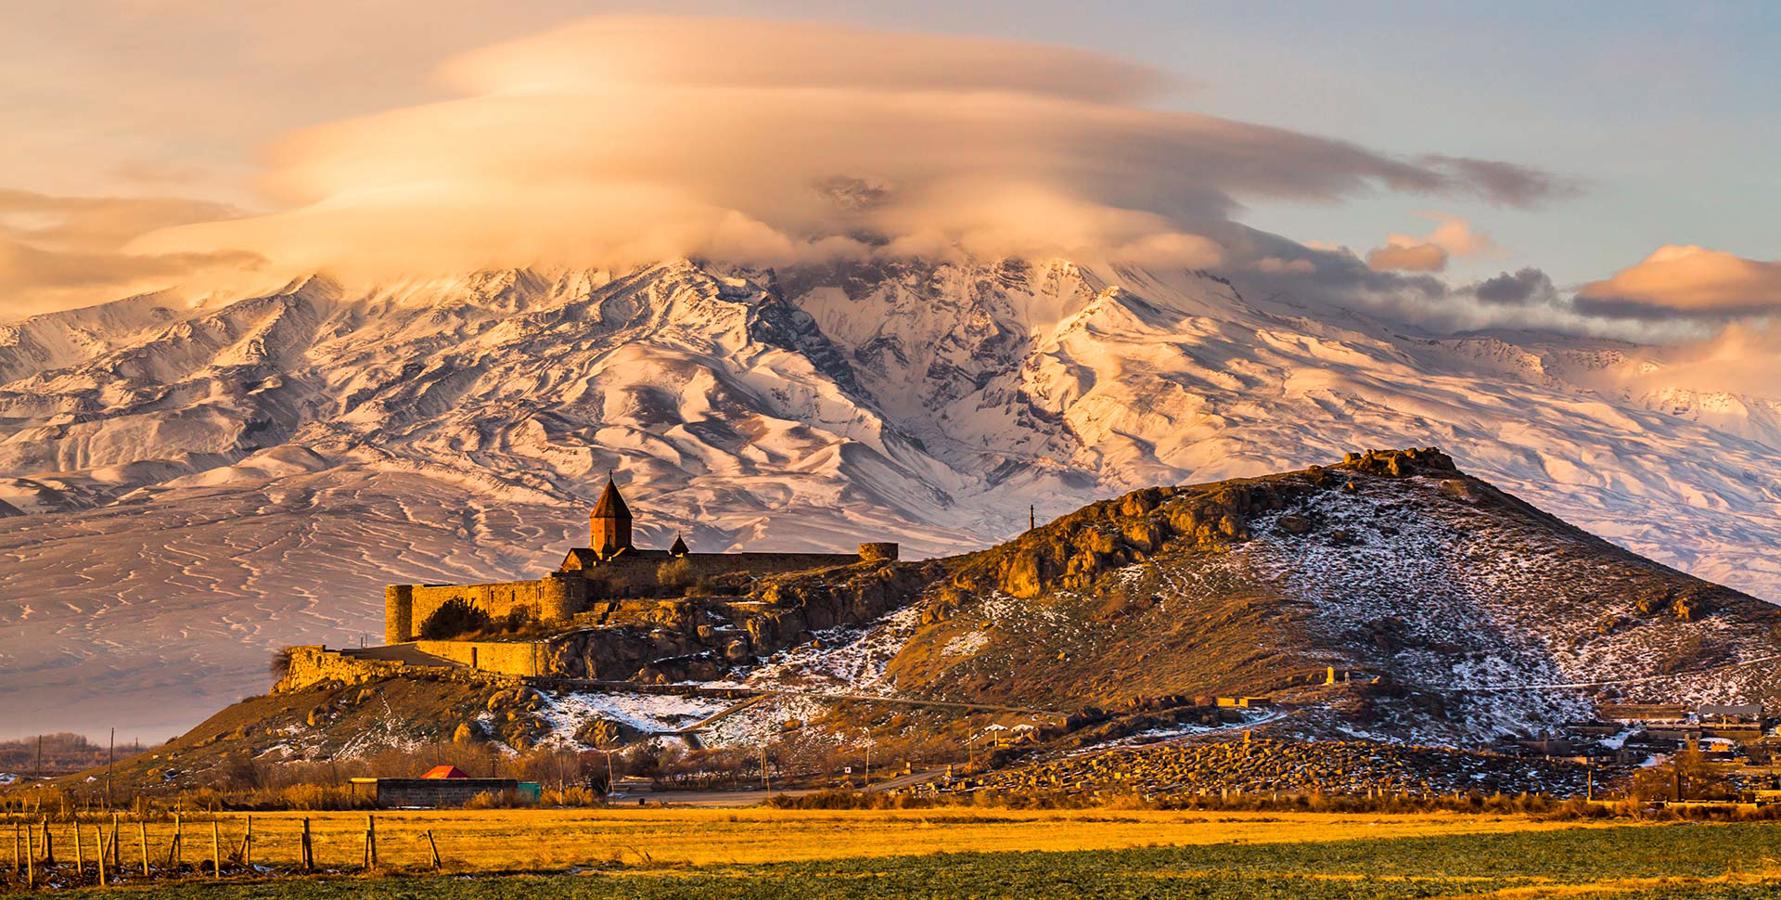 Mountains of Ararat. Armenia.